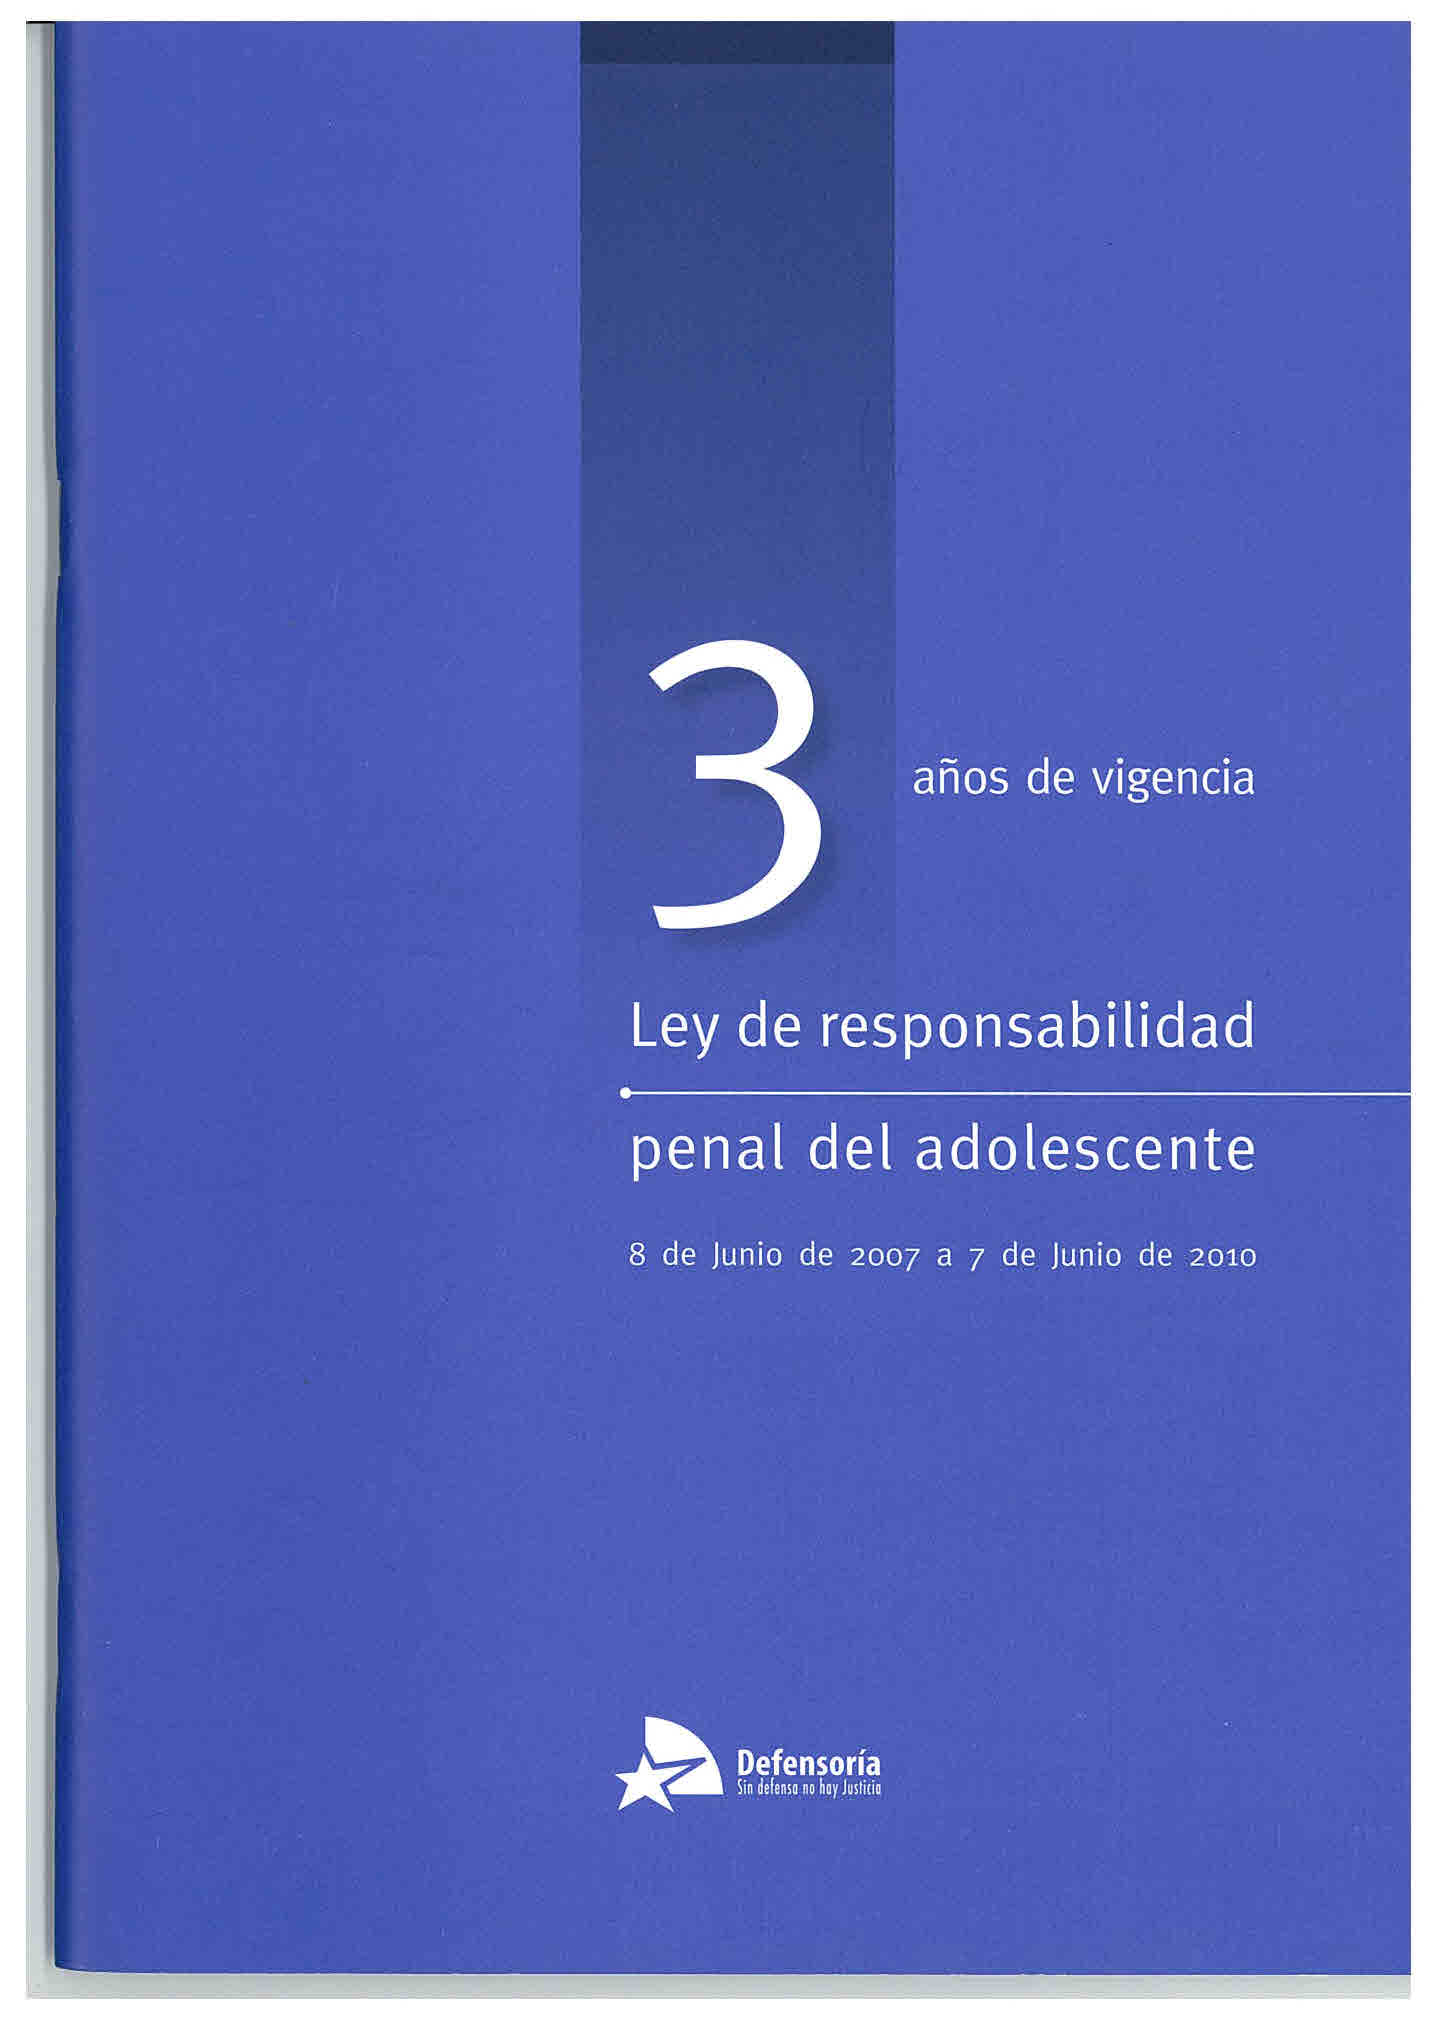 3 años de vigencia ley de responsabilidad penal del adolescente. 8 de junio de 2007 a 7 de junio de 2010.